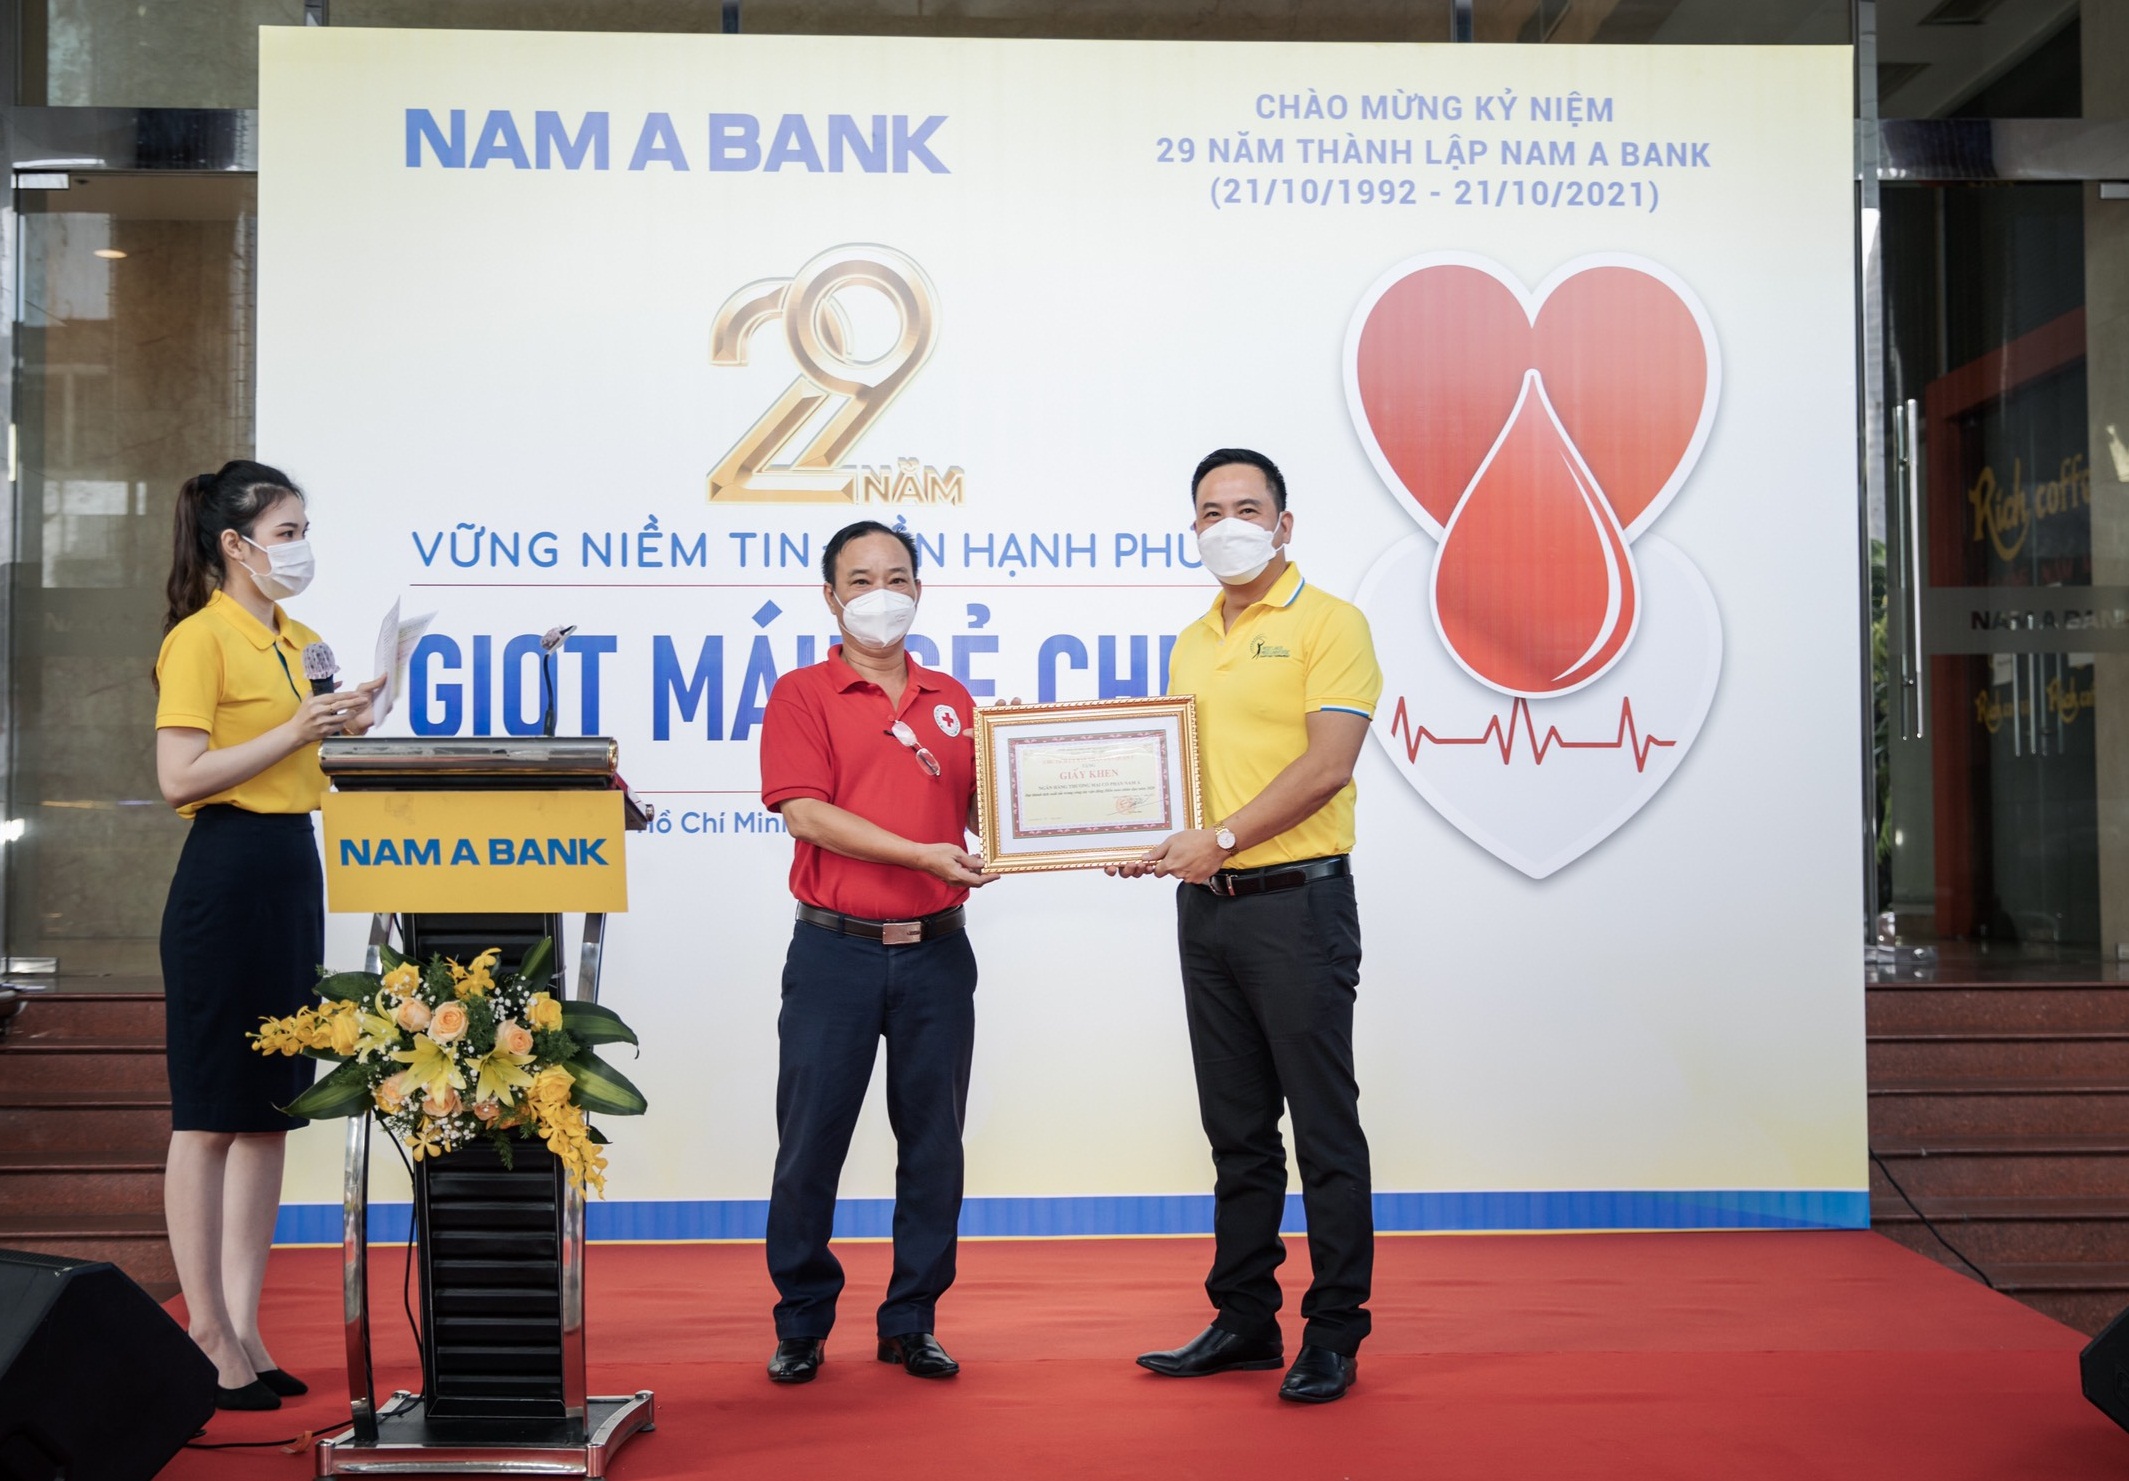 Chương trình “29 năm – Giọt máu sẻ chia” tiếp nhận gần 330 đơn vị máu